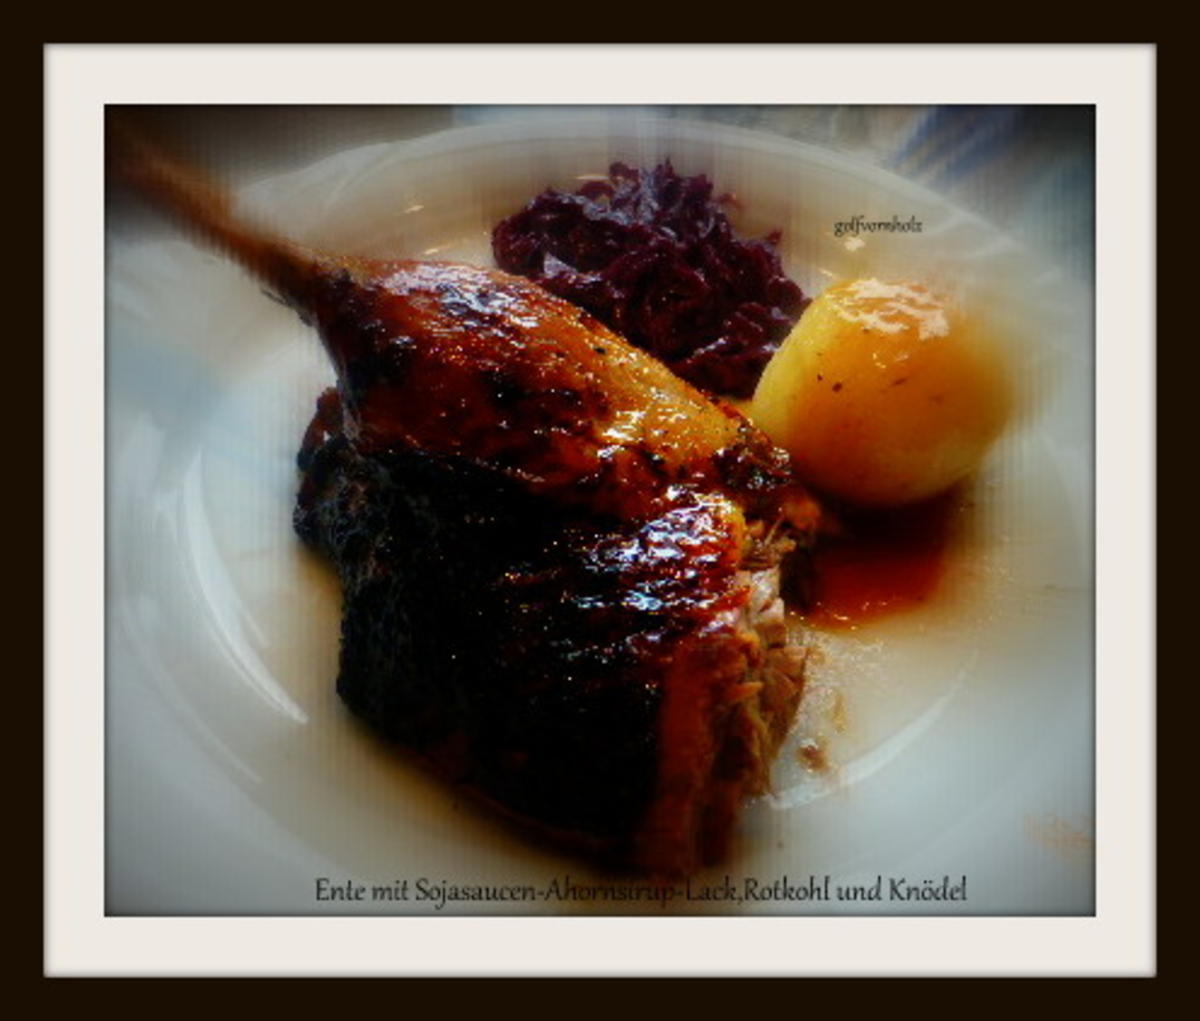 Ente mit Sojasaucen-Ahornsirup-Lack und mariniertem Rotkohl - Rezept - Bild Nr. 1102